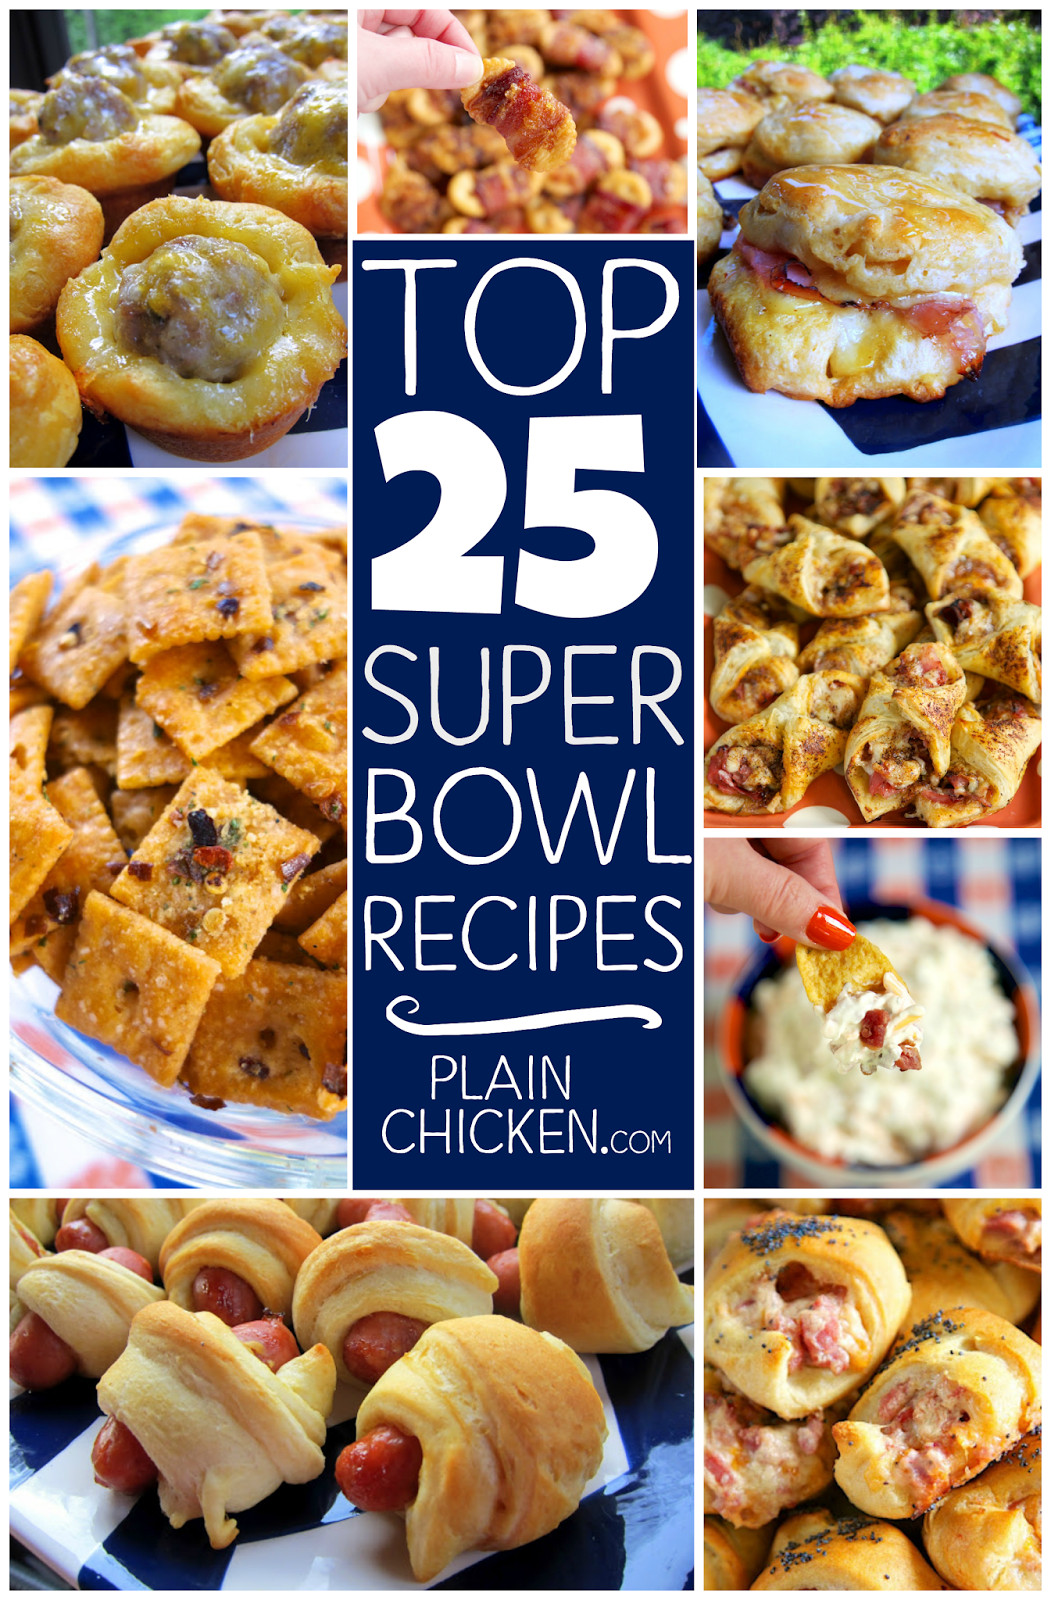 Top Super Bowl Recipes
 Top 25 Super Bowl Recipes